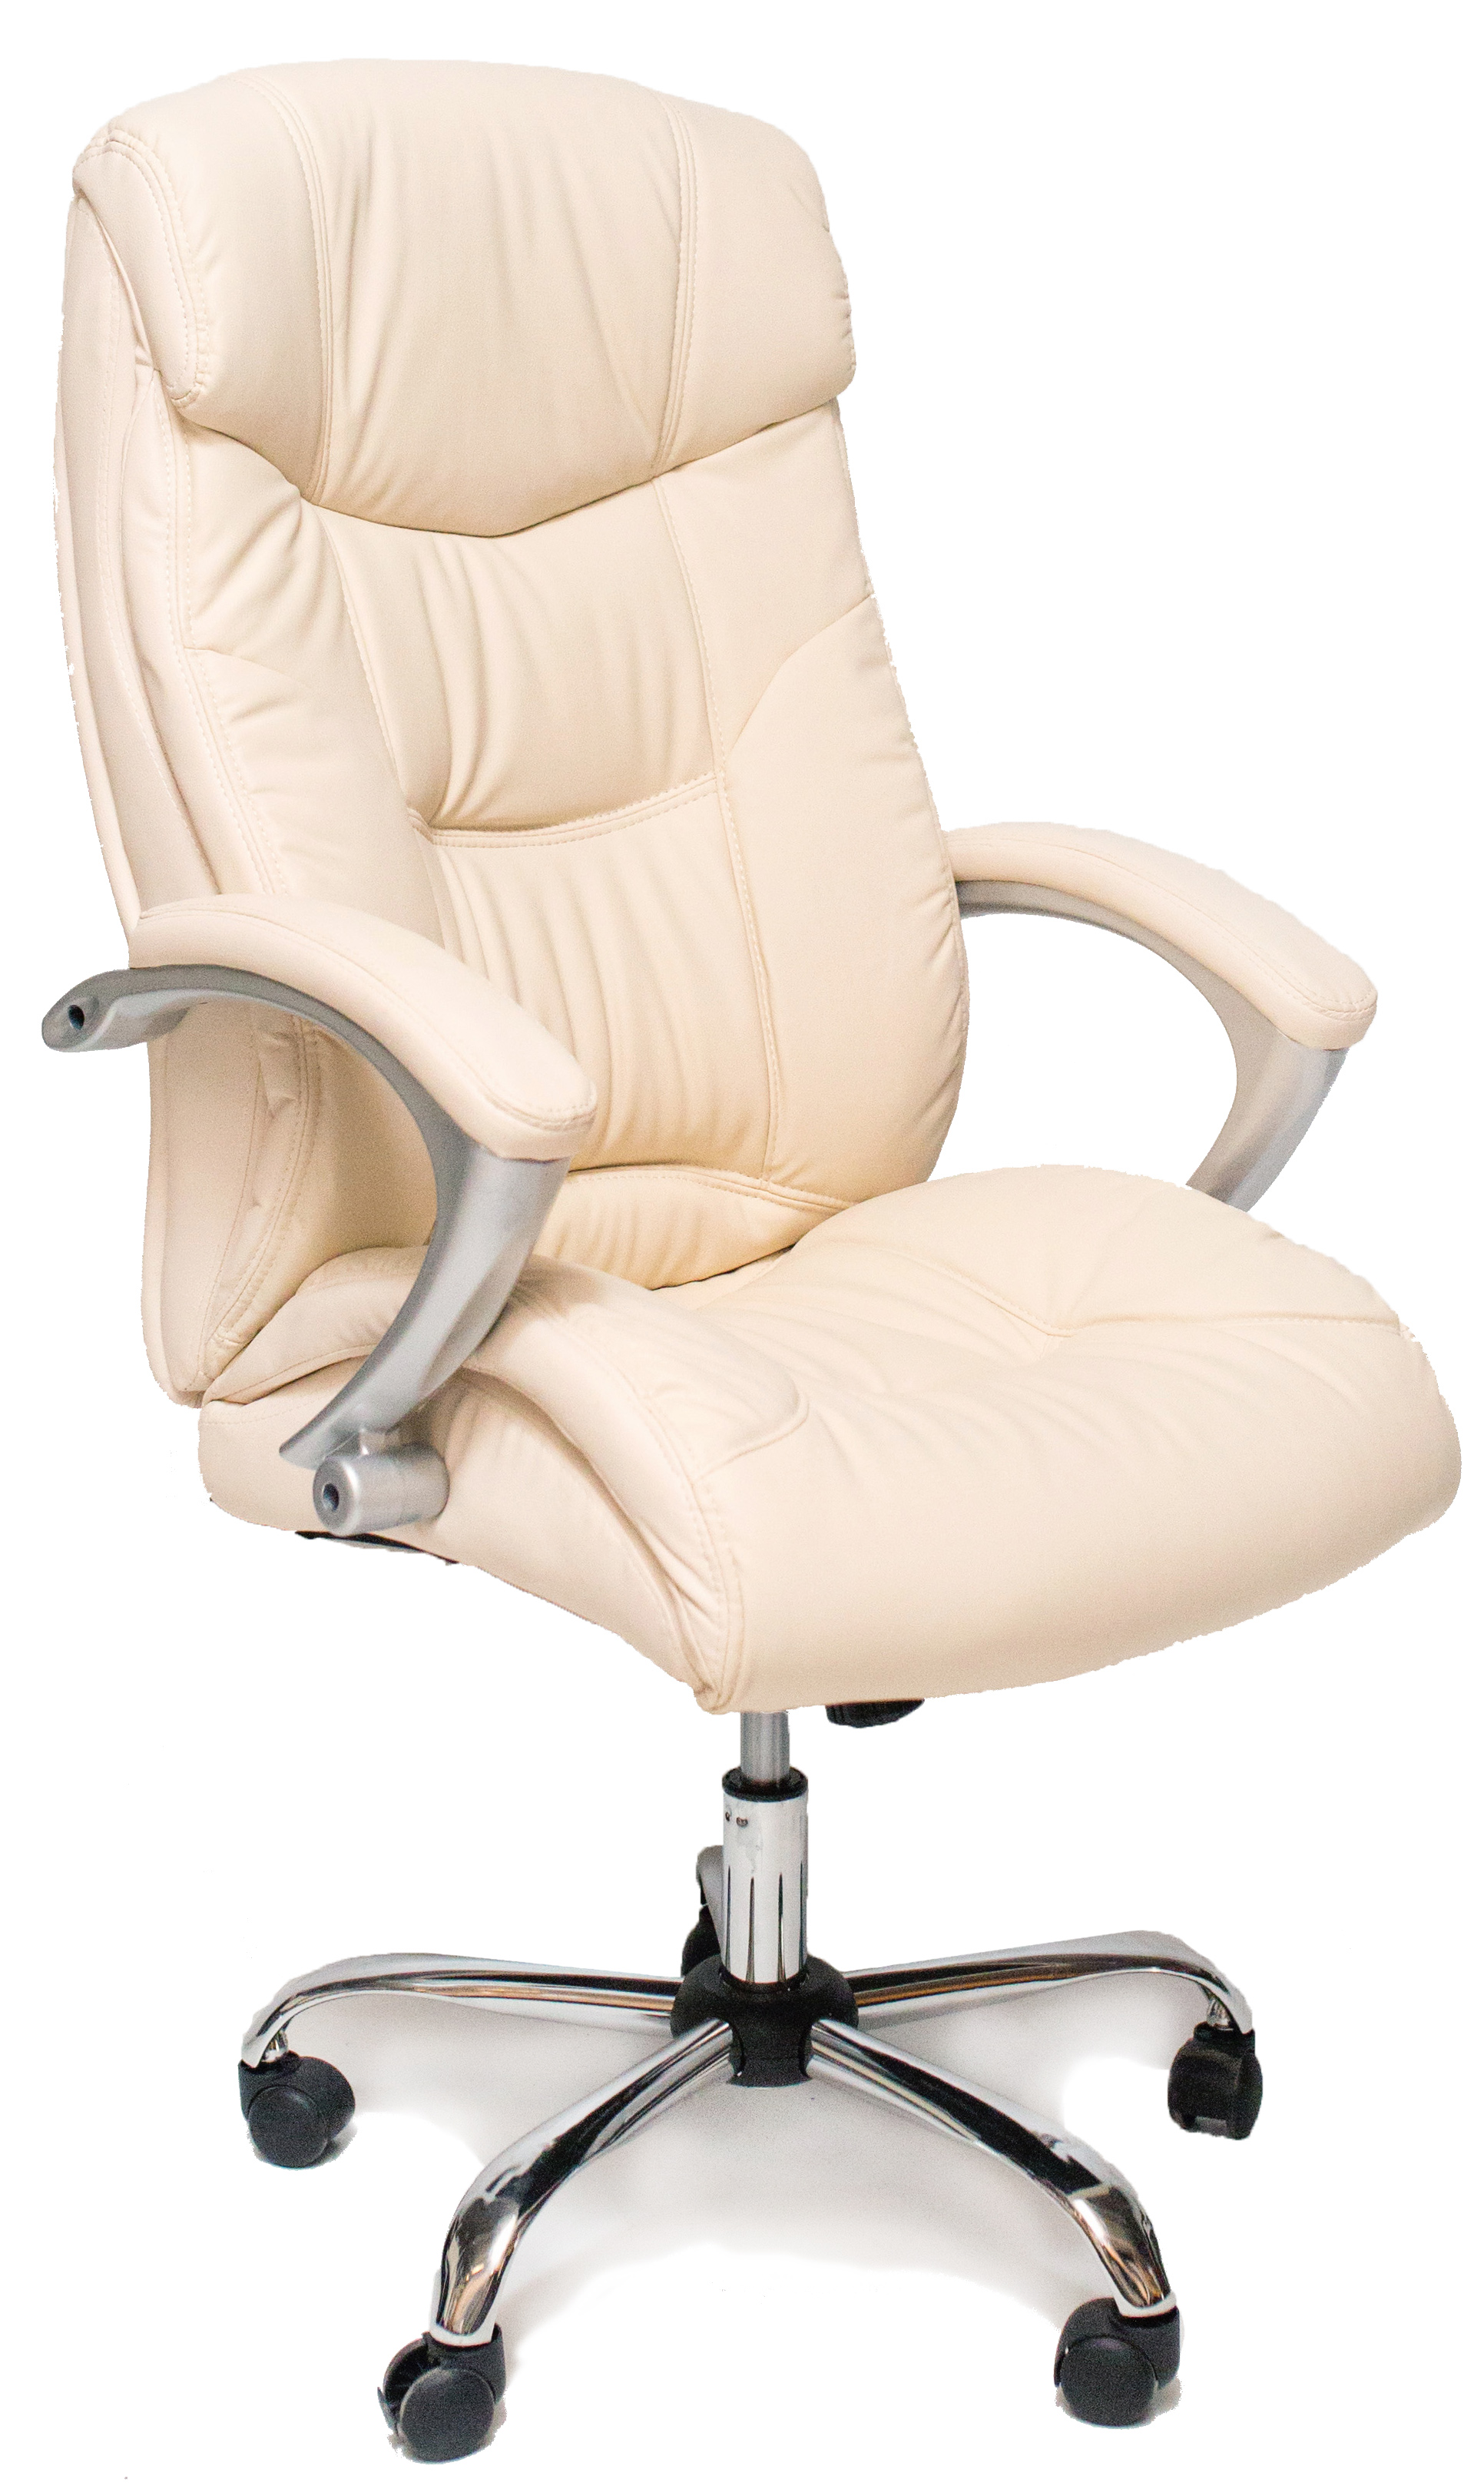  кресло Deco BX-3165 Beige,  по выгодной цене с доставкой .